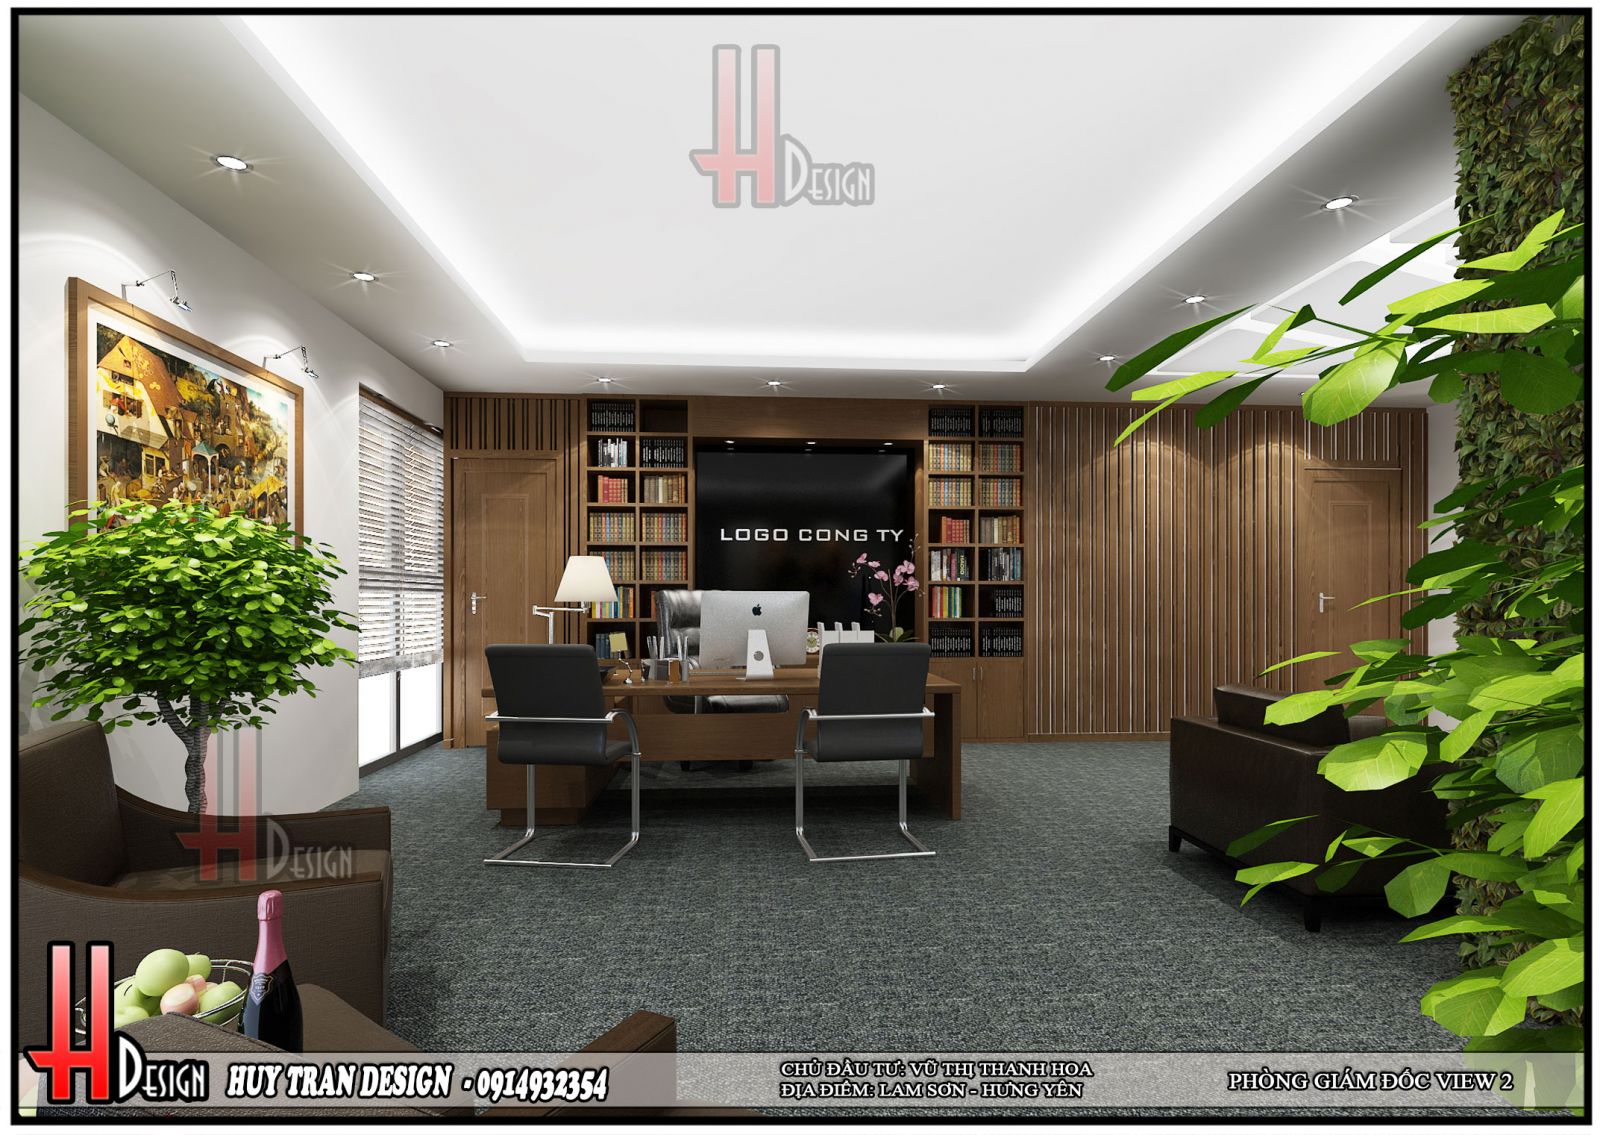 Phối cảnh thiết kế nội thất hiện đại văn phòng làm việc 5 tầng - Huytrandesign tư vấn, thiết kế, thi công, sửa chữa nhà cửa, biệt thự, văn phòng, cơ sở kinh doanh-v2